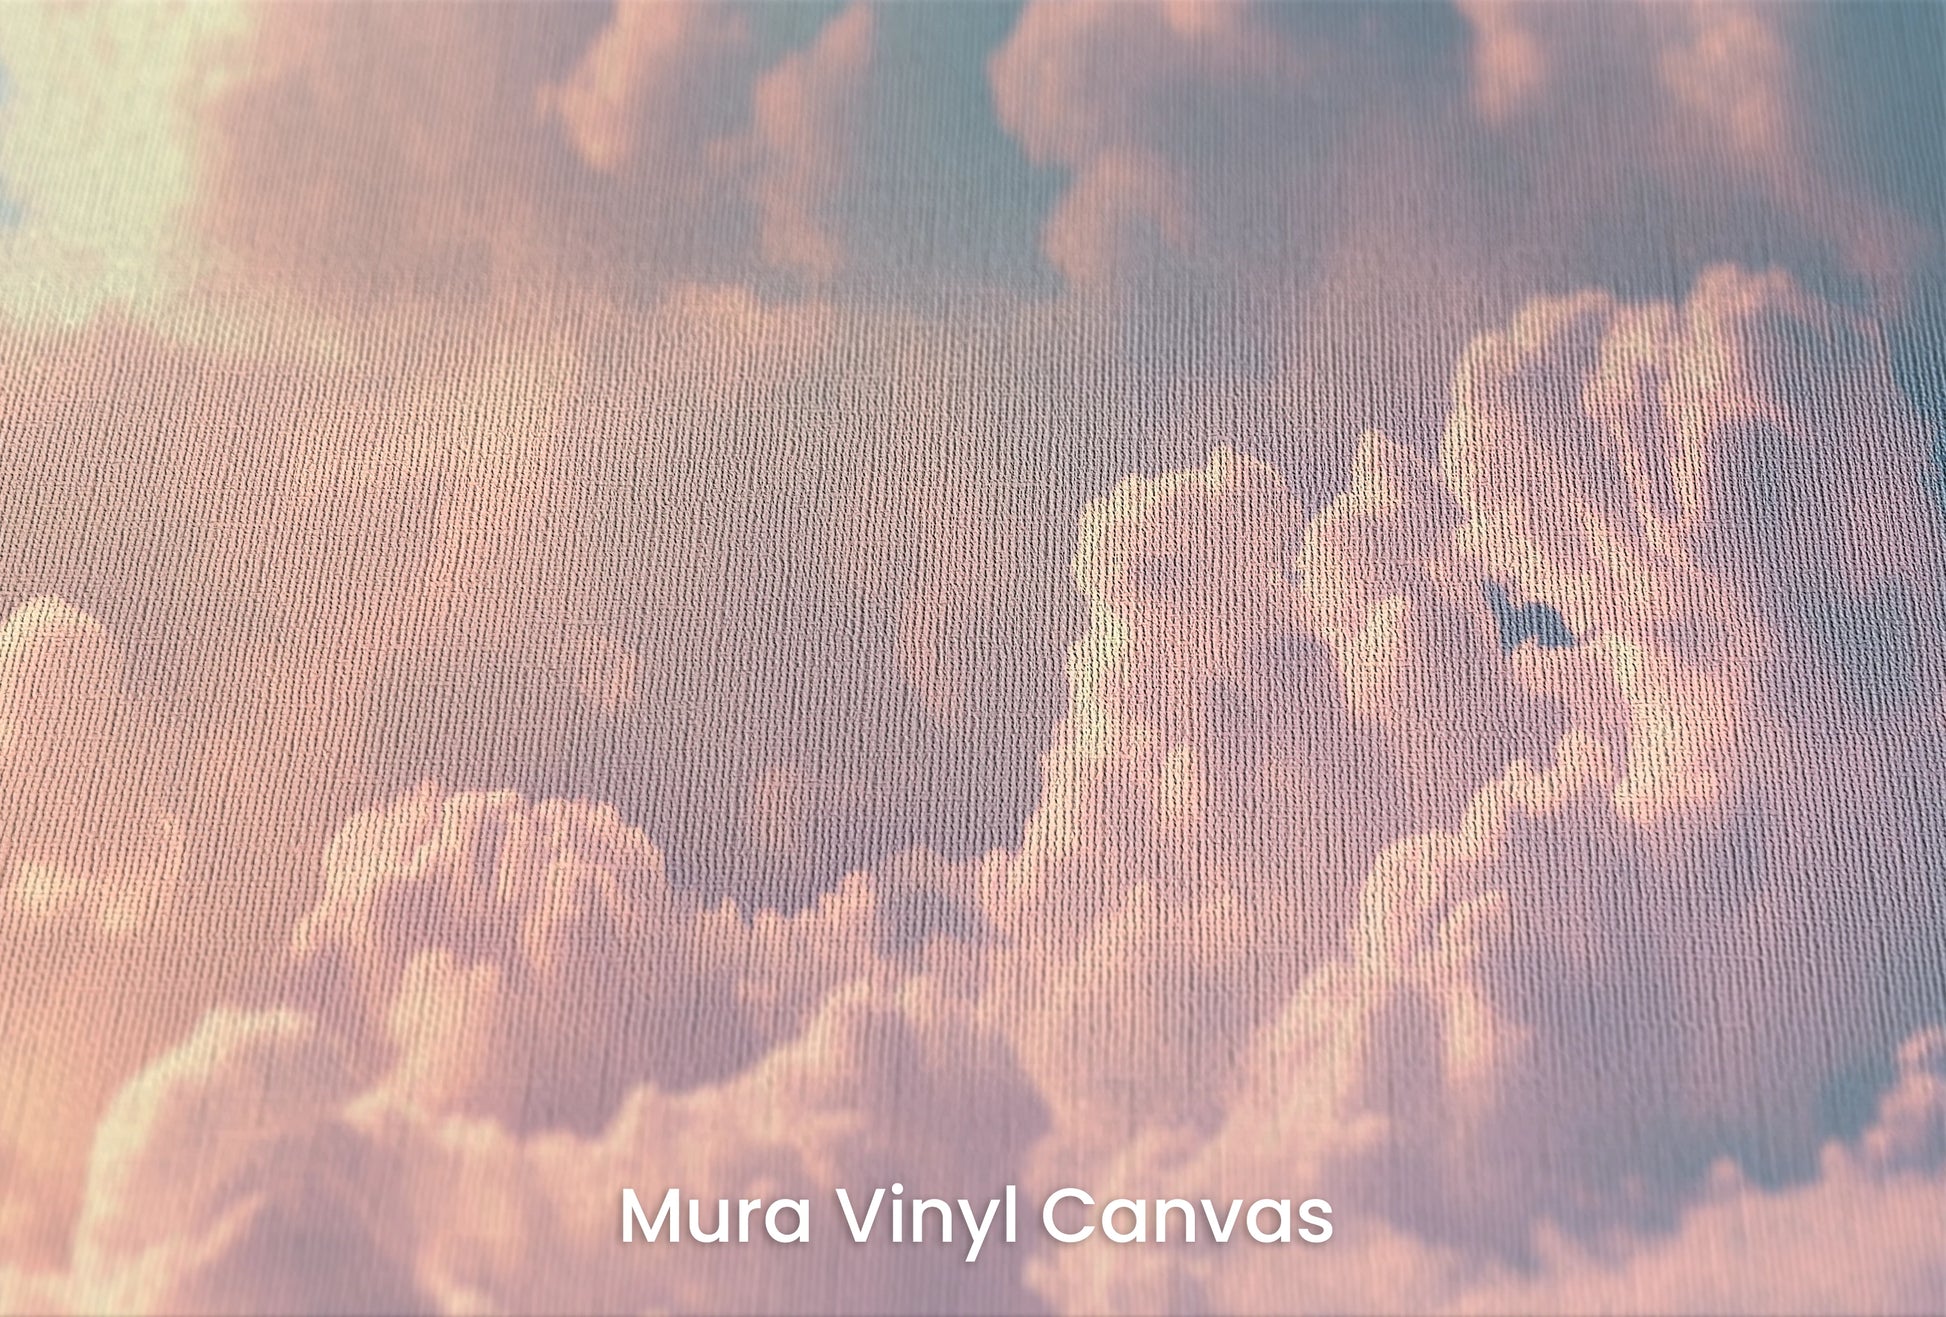 Zbliżenie na artystyczną fototapetę o nazwie Azure Canvas na podłożu Mura Vinyl Canvas - faktura naturalnego płótna.